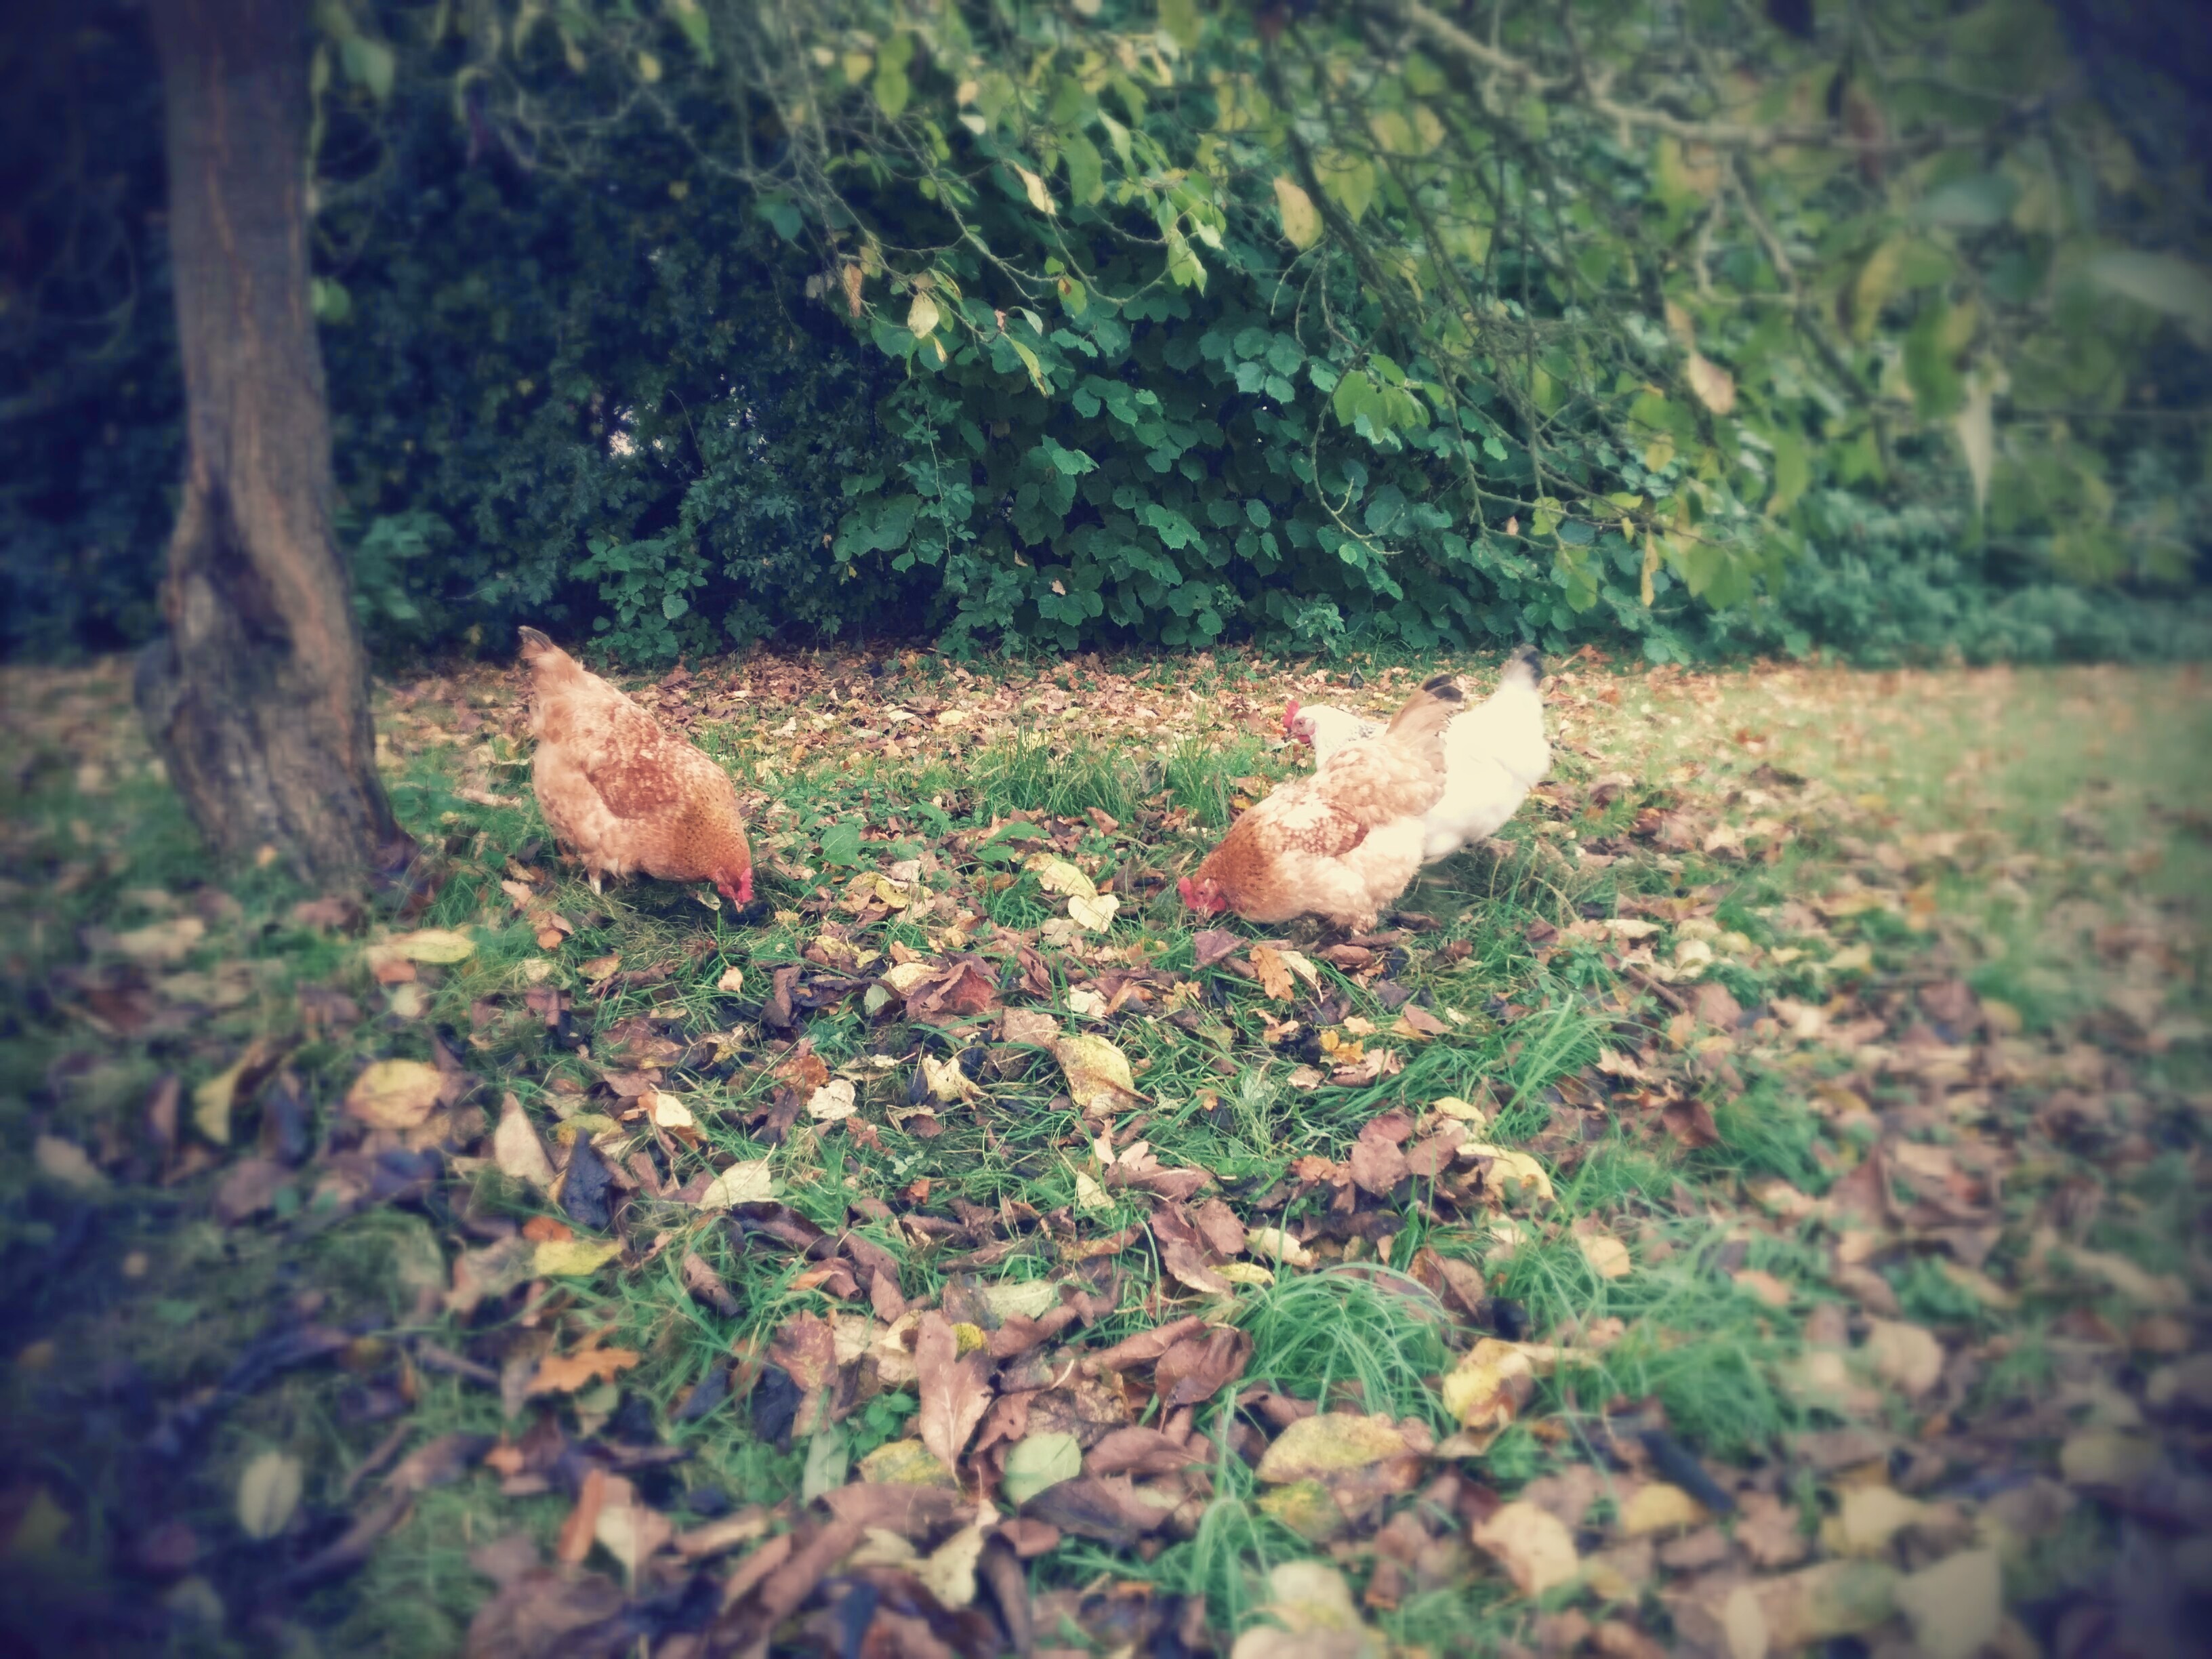 Chickens love autumn